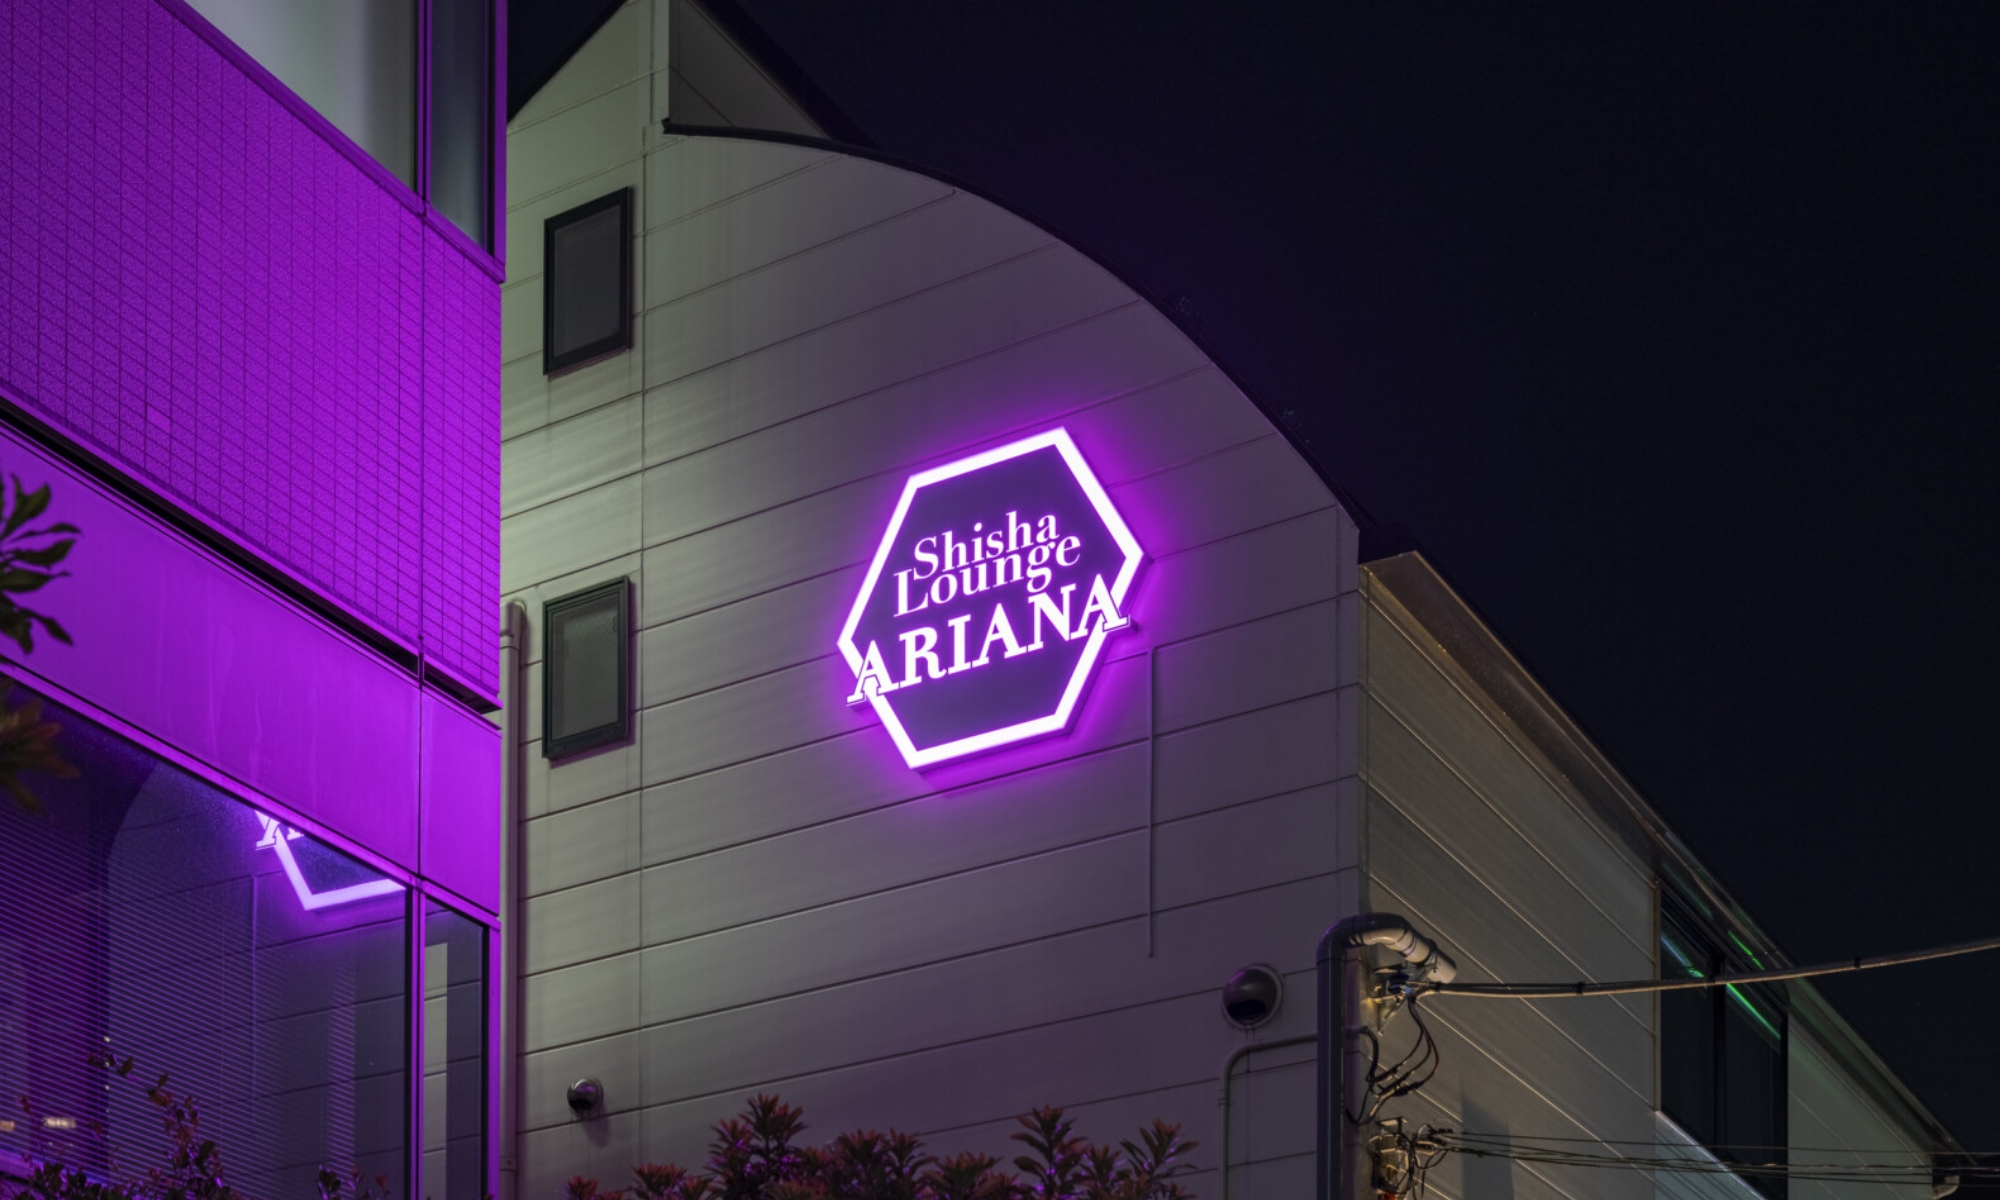 Shisha Lounge ARIANA_外観_ロゴ